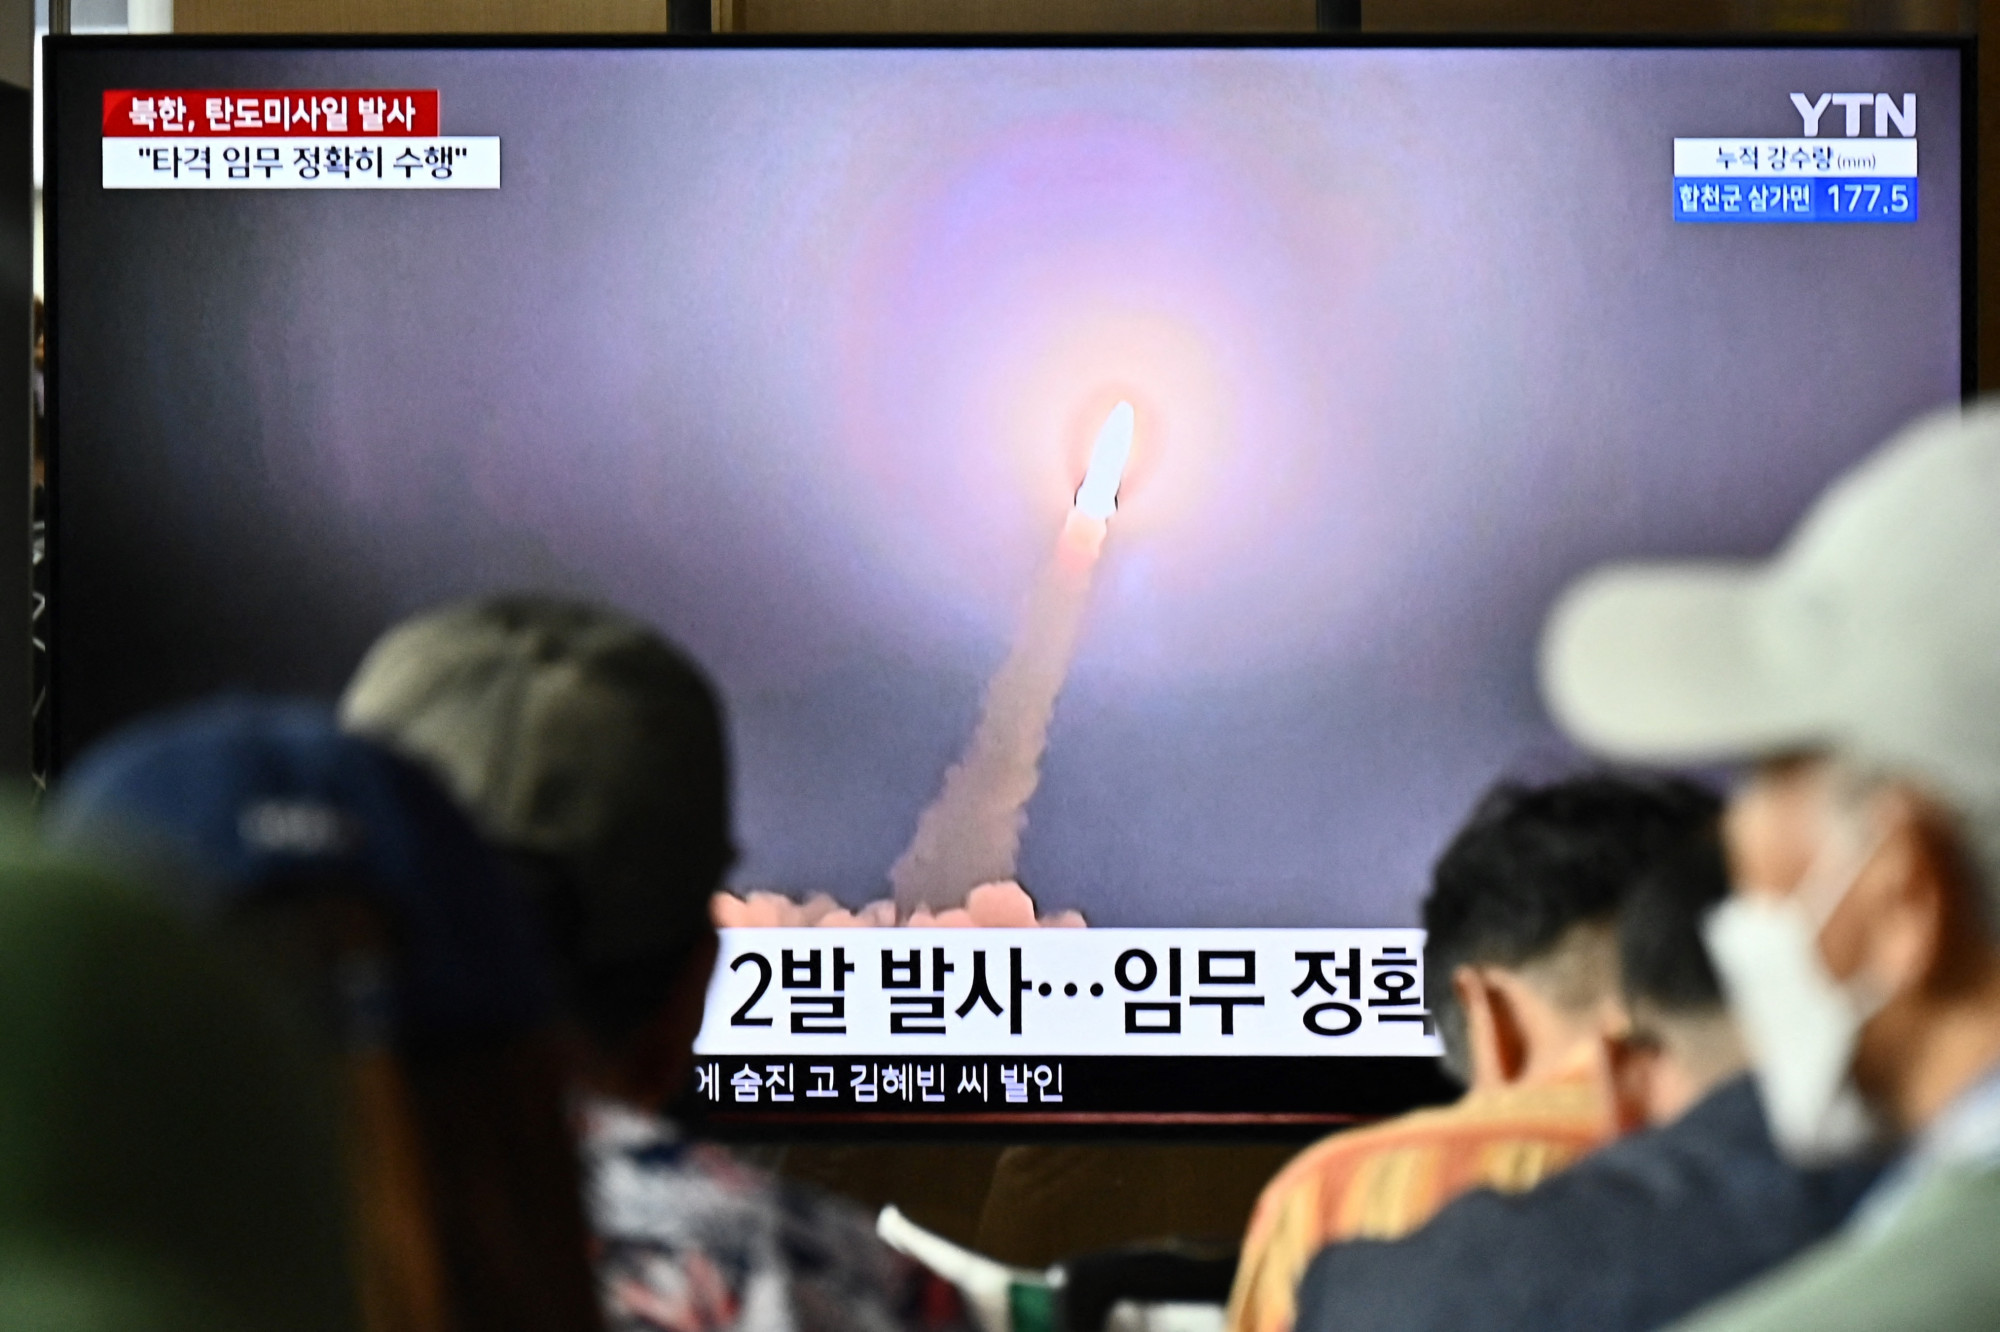 Észak-Korea azt állítja, nukleáris csapást szimulált Dél-Korea ellen